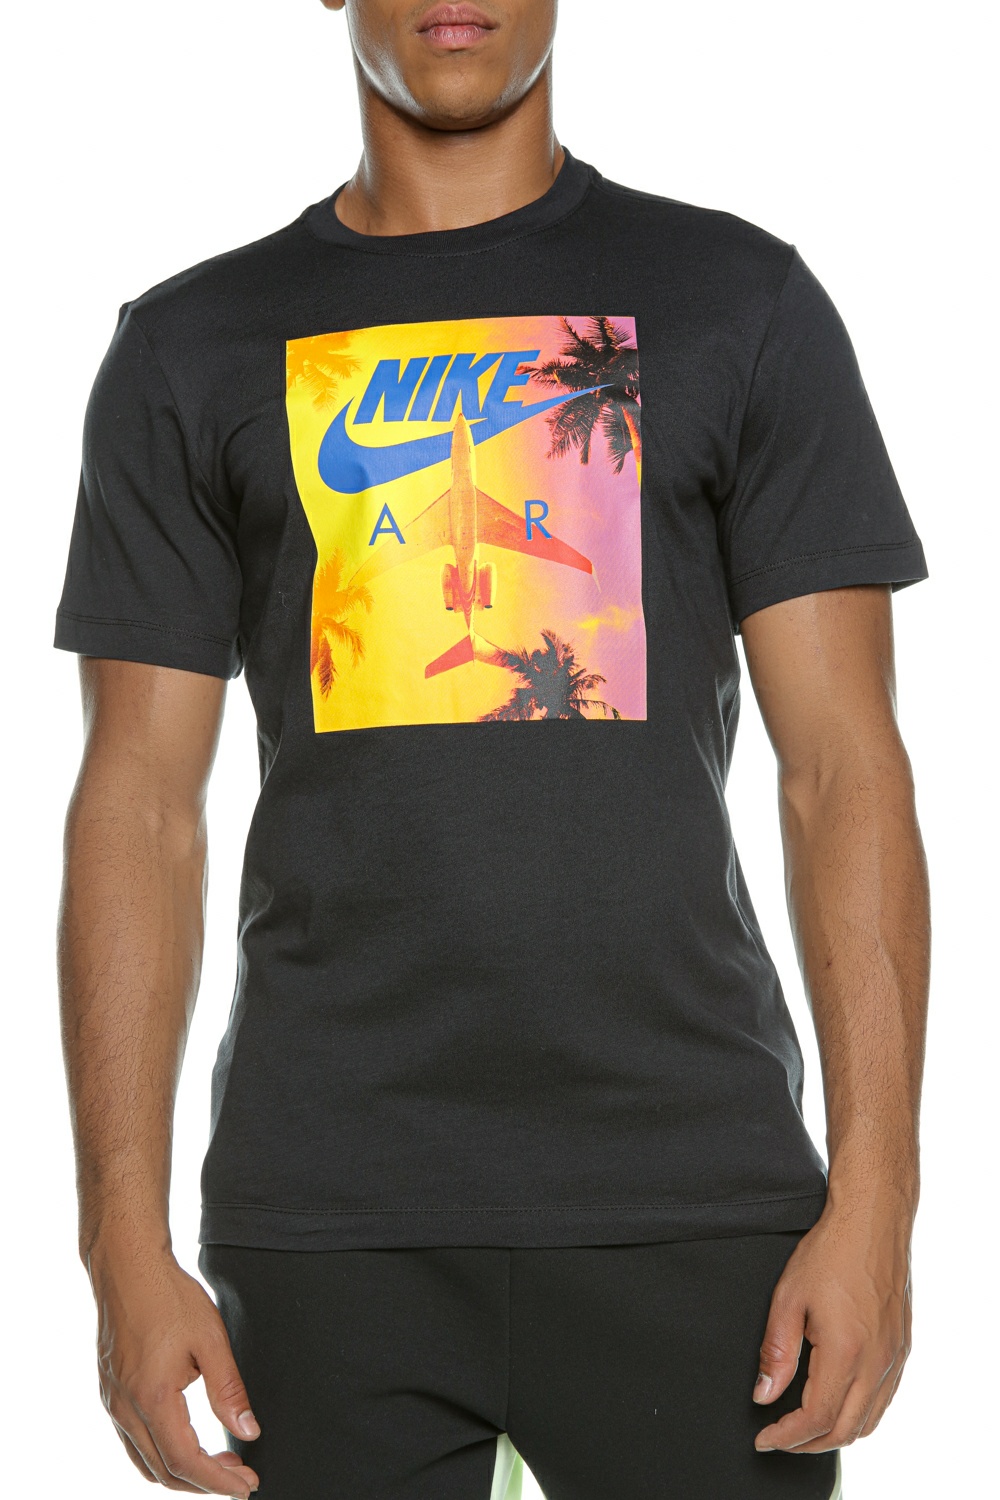 Ανδρικά/Ρούχα/Αθλητικά/T-shirt NIKE - Ανδρικό t-shirt NIKE NSW TEE SWOOSH BY AIR PHOTO μαύρο